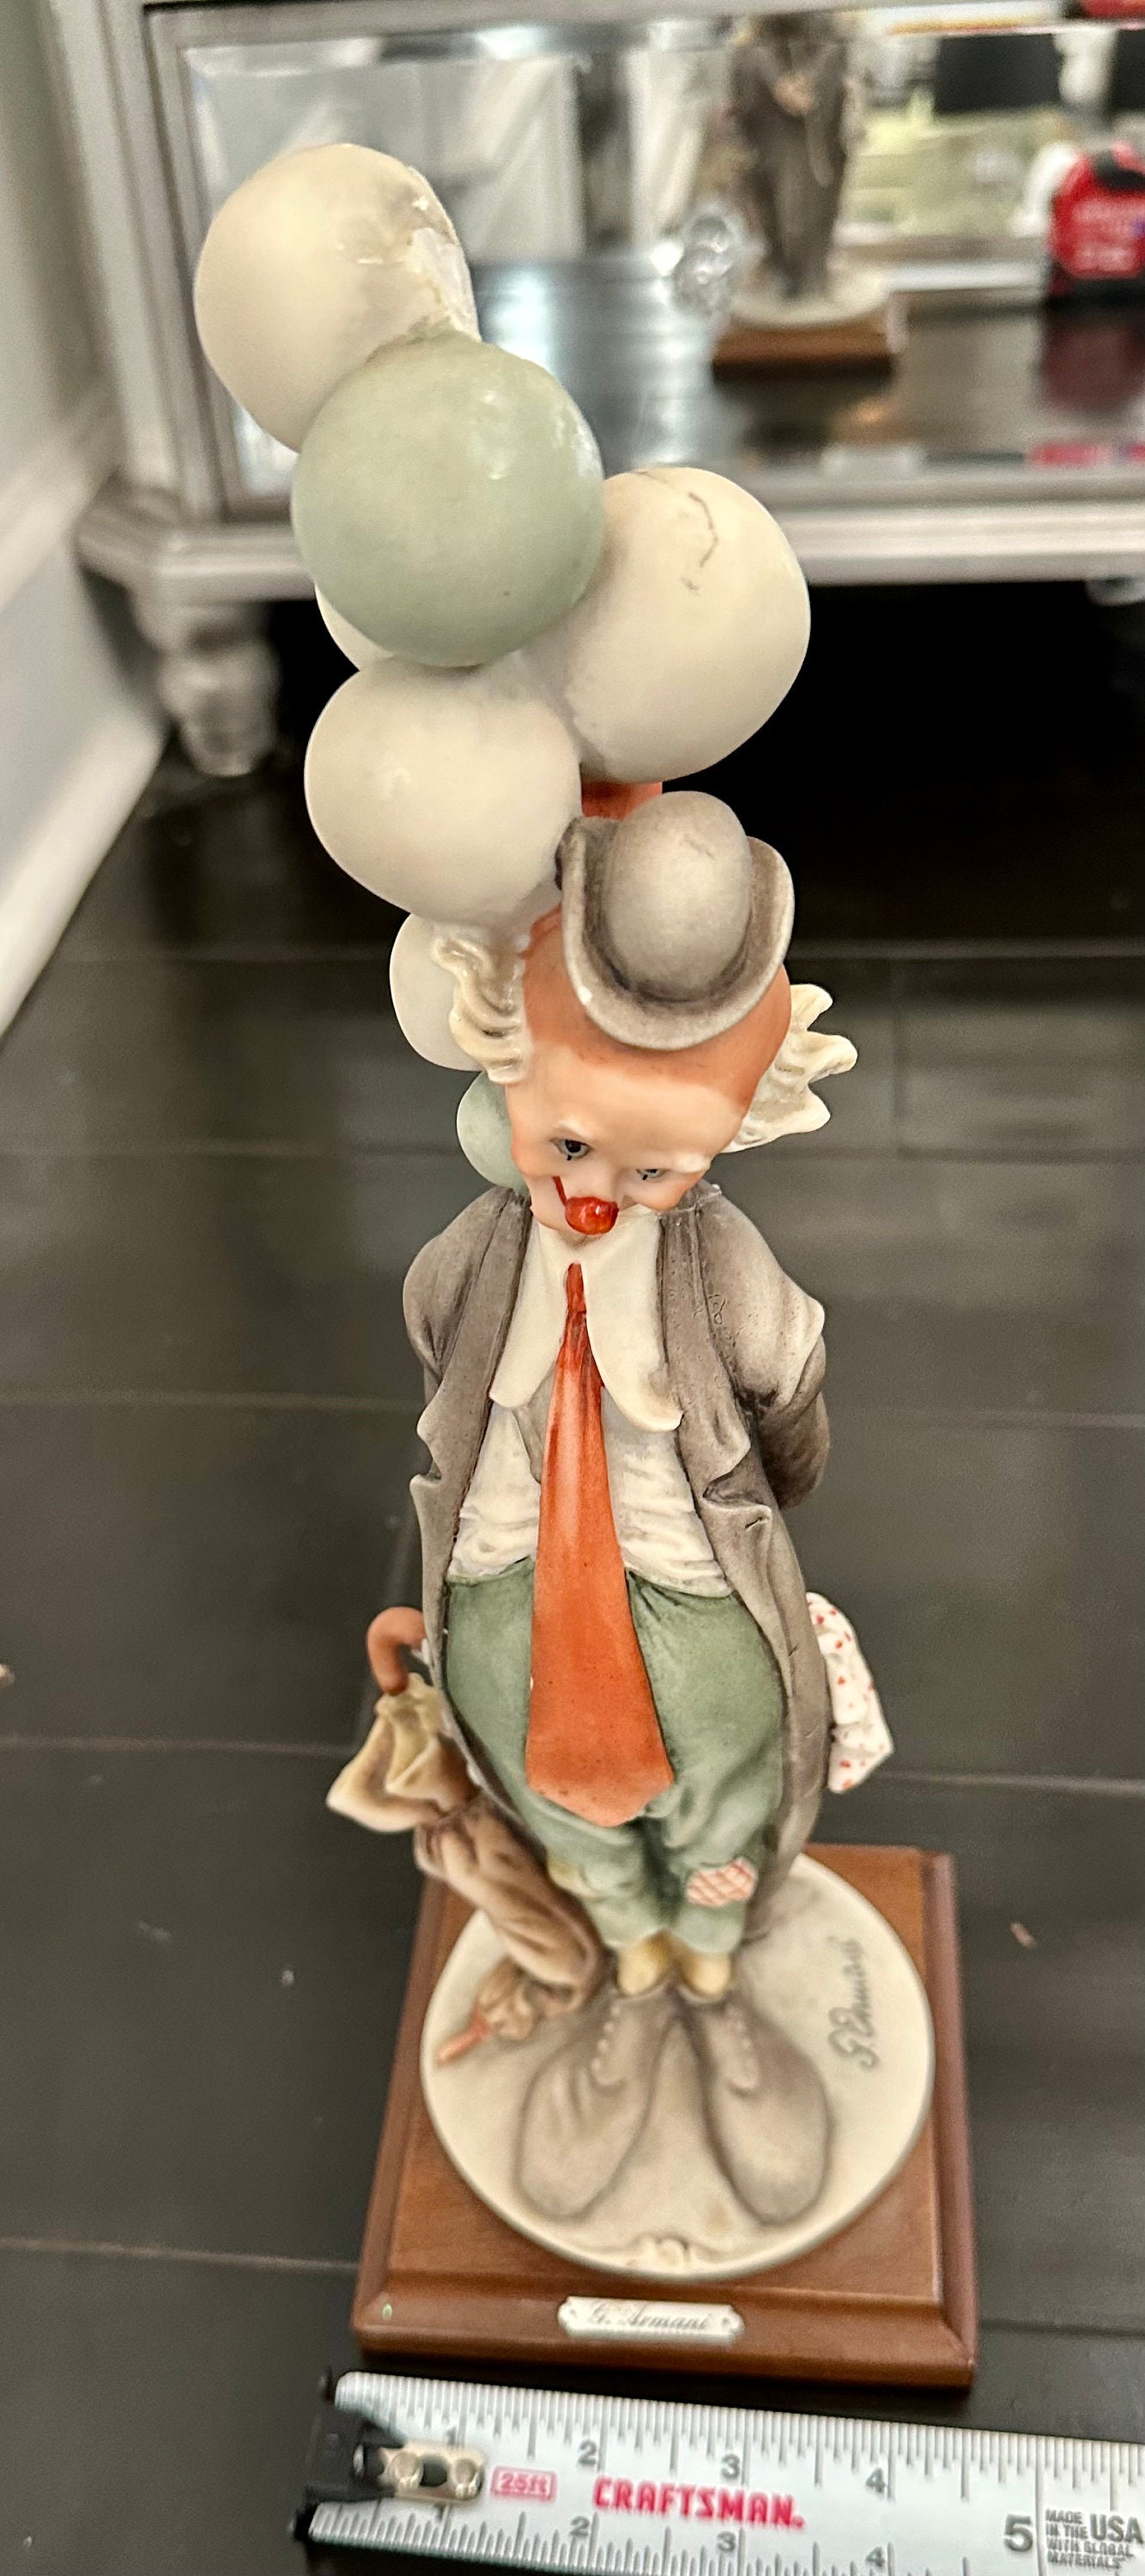 Giuseppe Armani The Pensive Clown With Balloons Sculpture 0268e